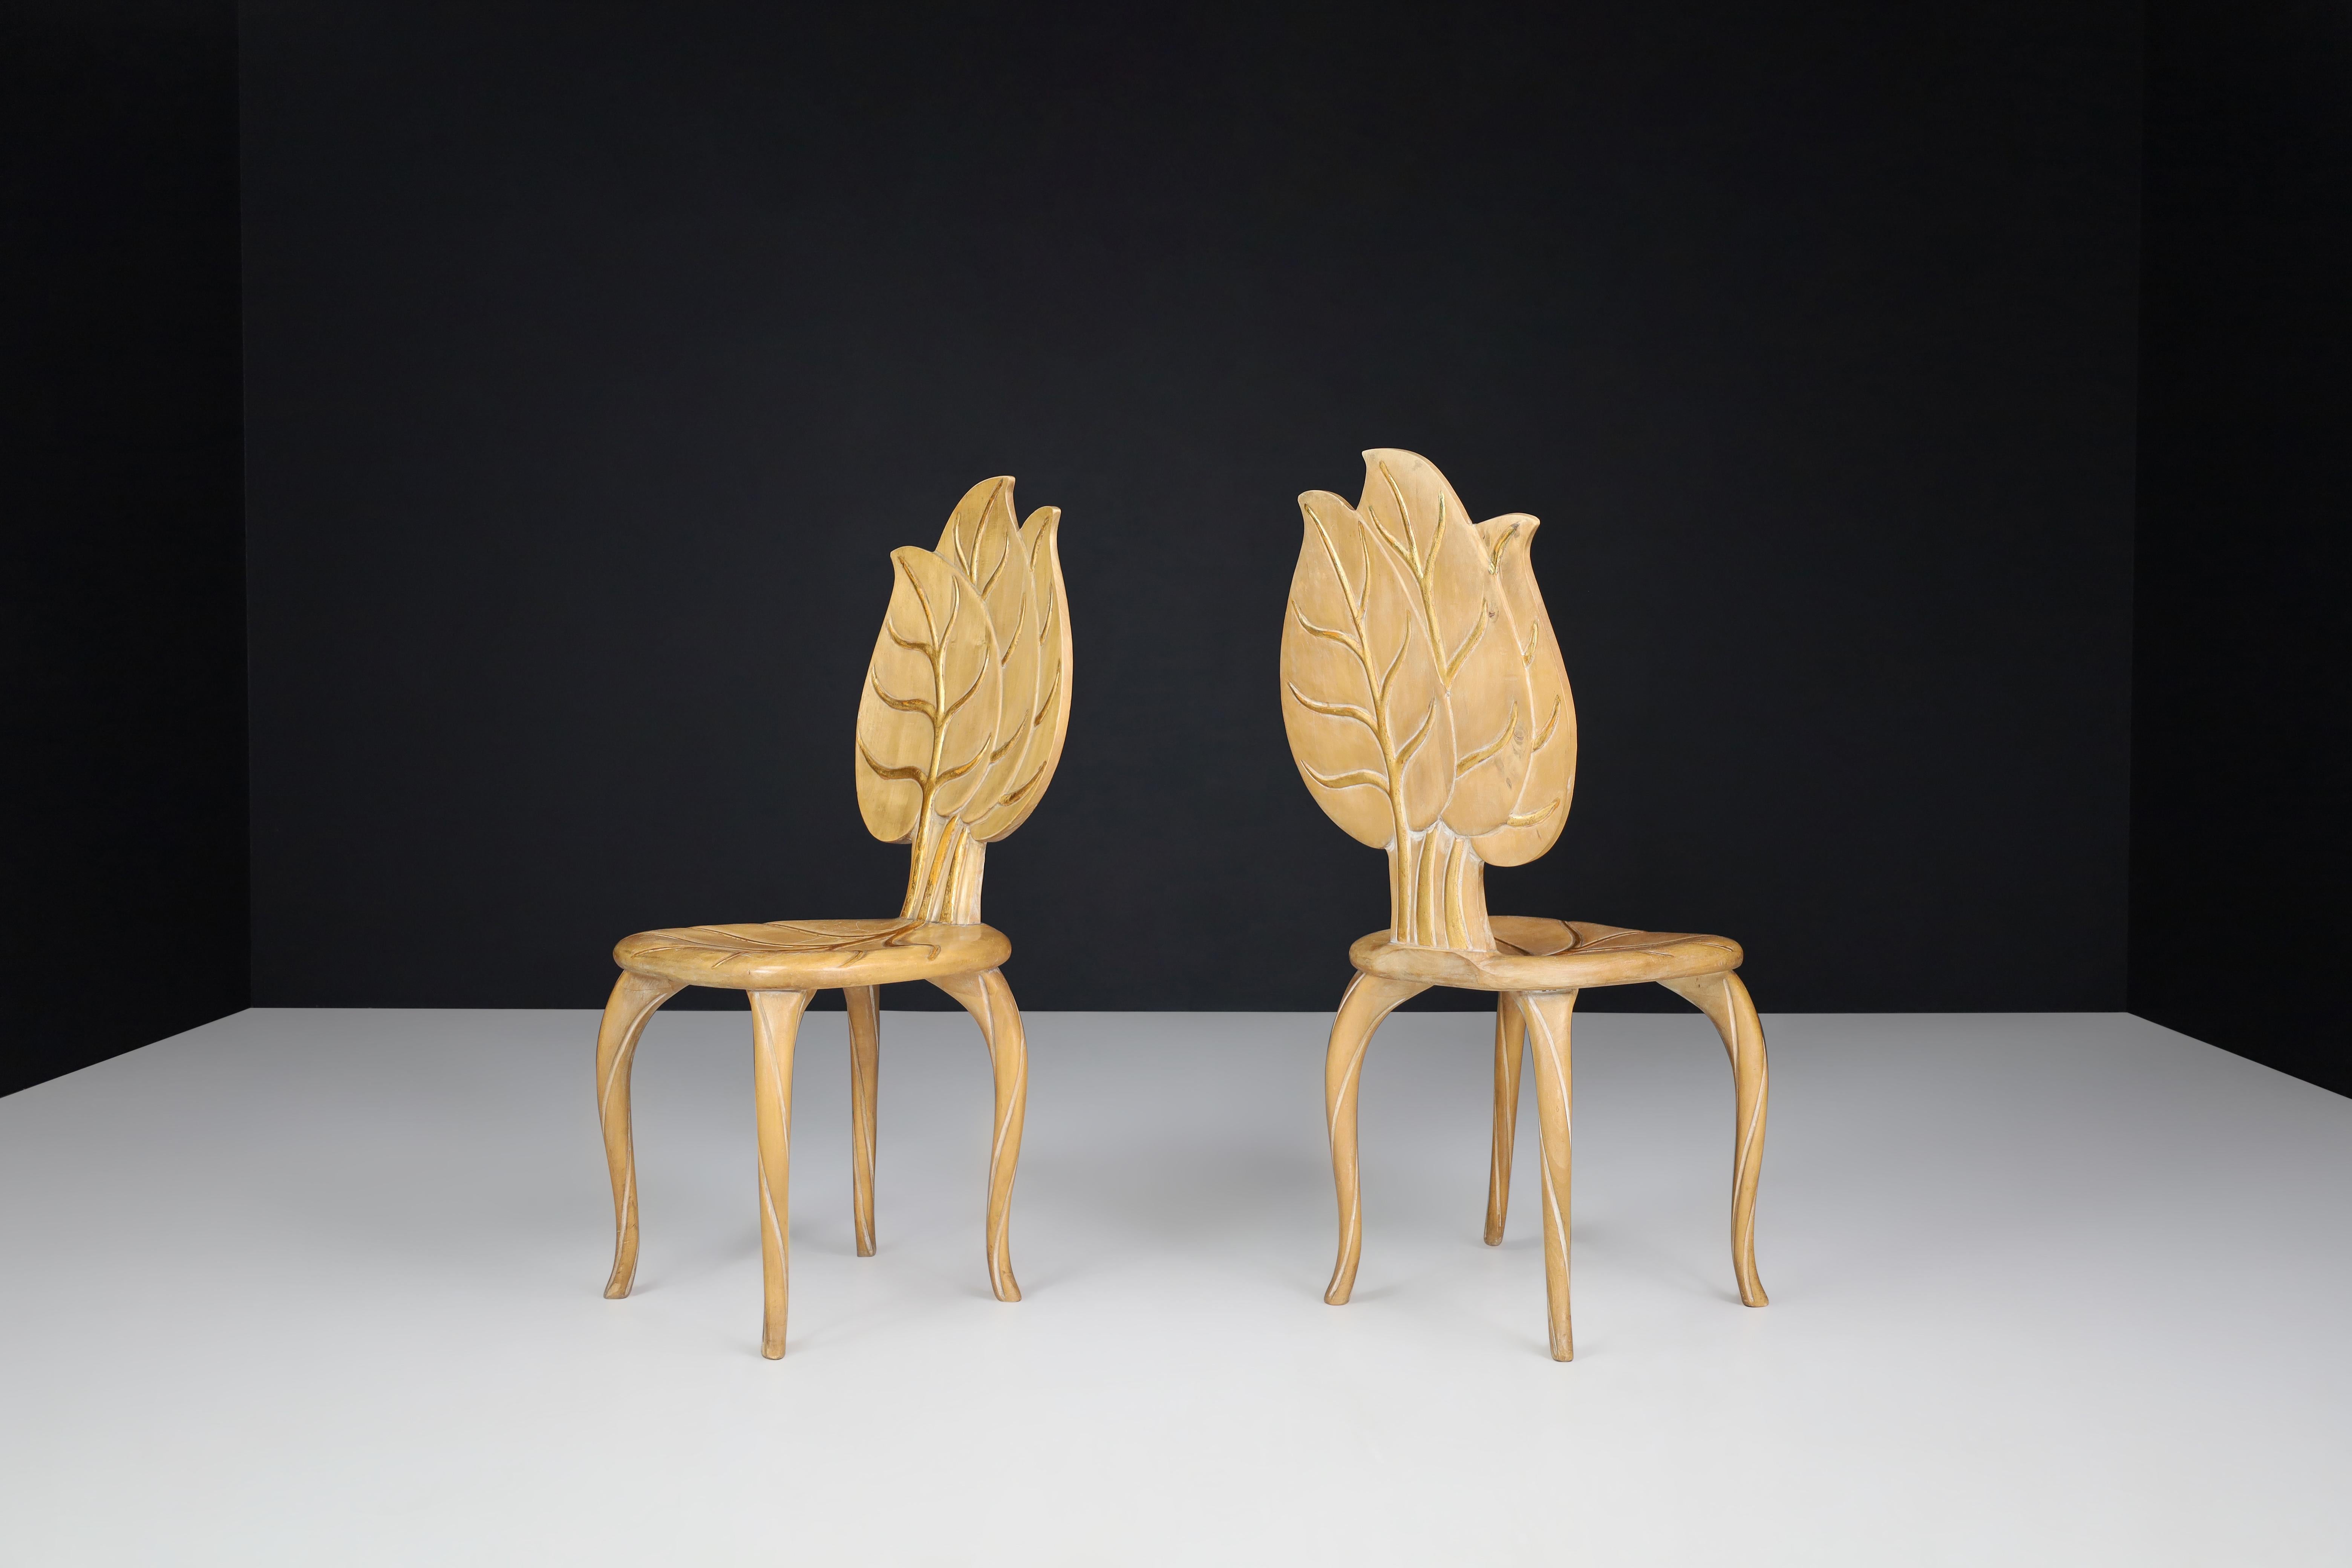 Chaises en bois et feuilles d'or Bartolozzi & Maioli, Italie, années 1970.

Paire de deux chaises à feuilles en bois sculpté à la main Bartolozzi & Maioli, avec patine d'origine. Ces chaises attireront l'attention dans n'importe quel intérieur,